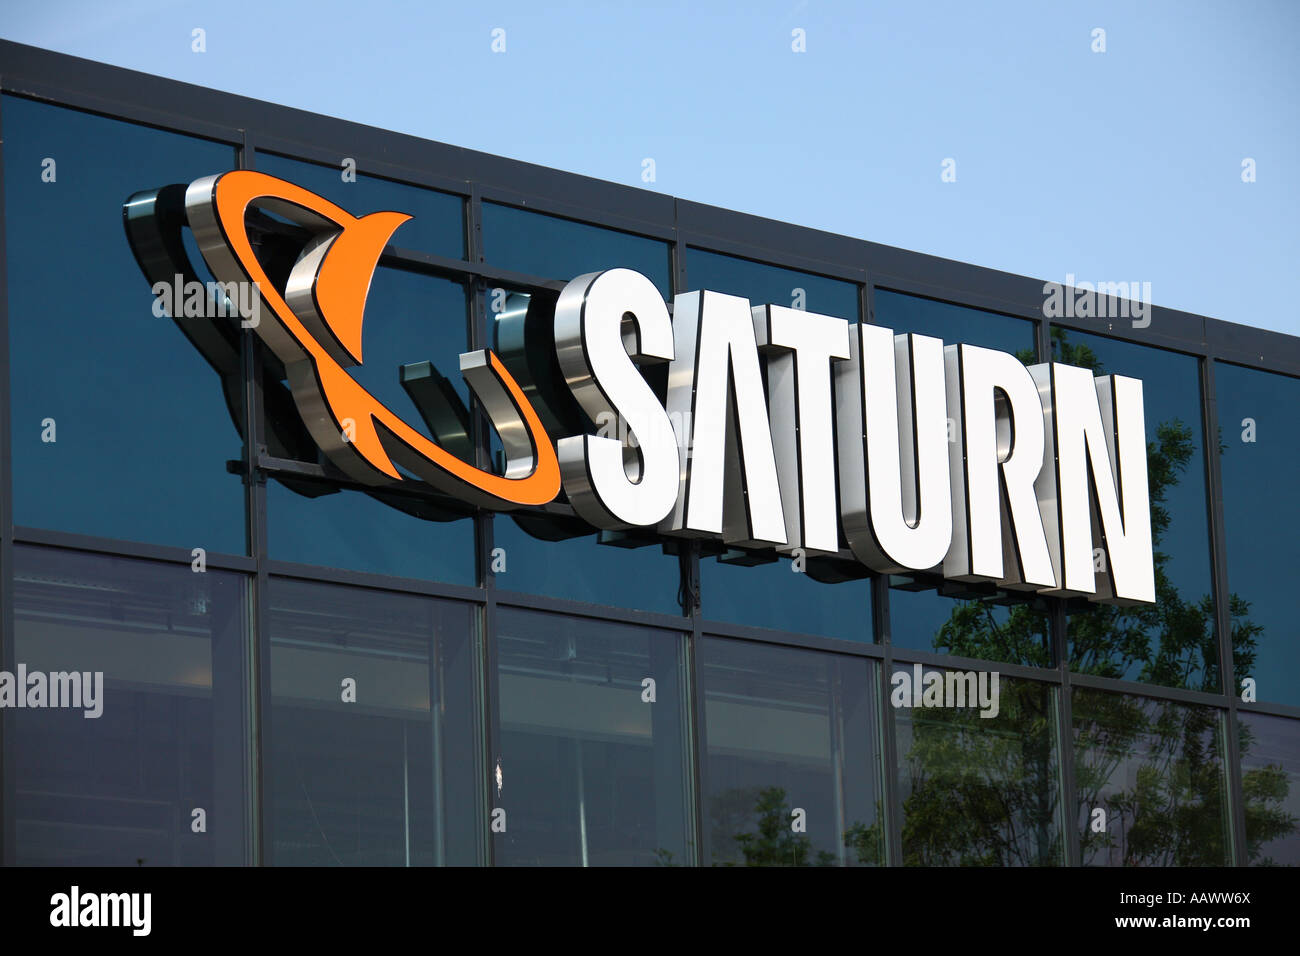 Saturn electronics store, Munich, Germany Stock Photo - Alamy